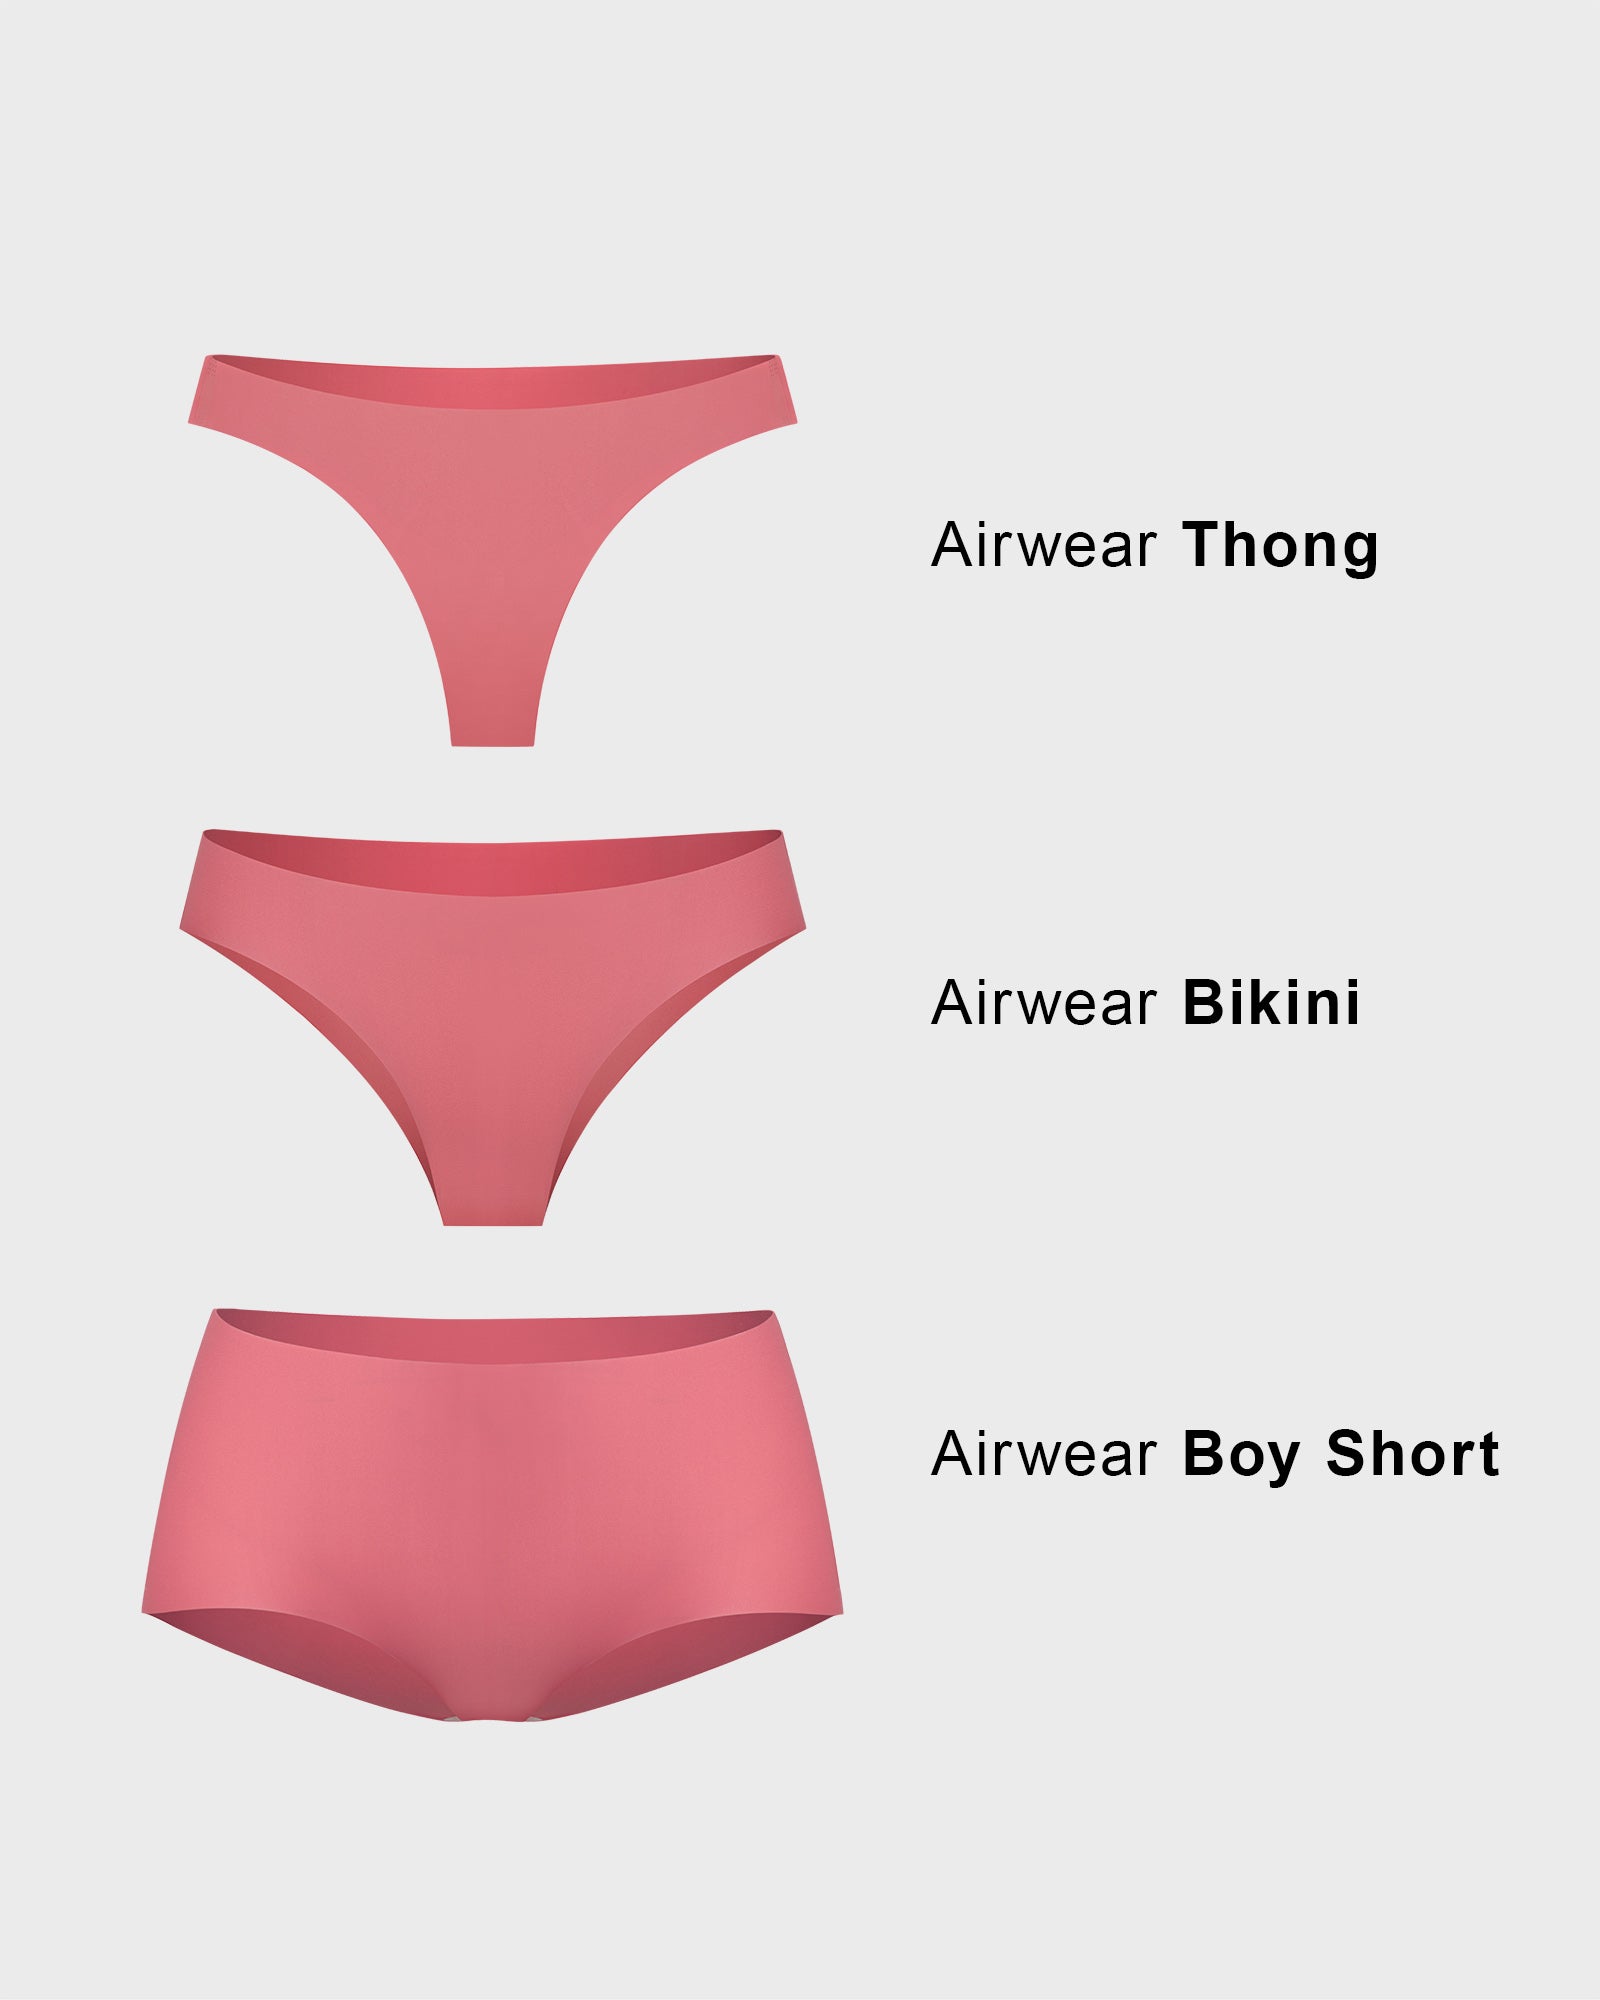 AirWear Underwear Bundle